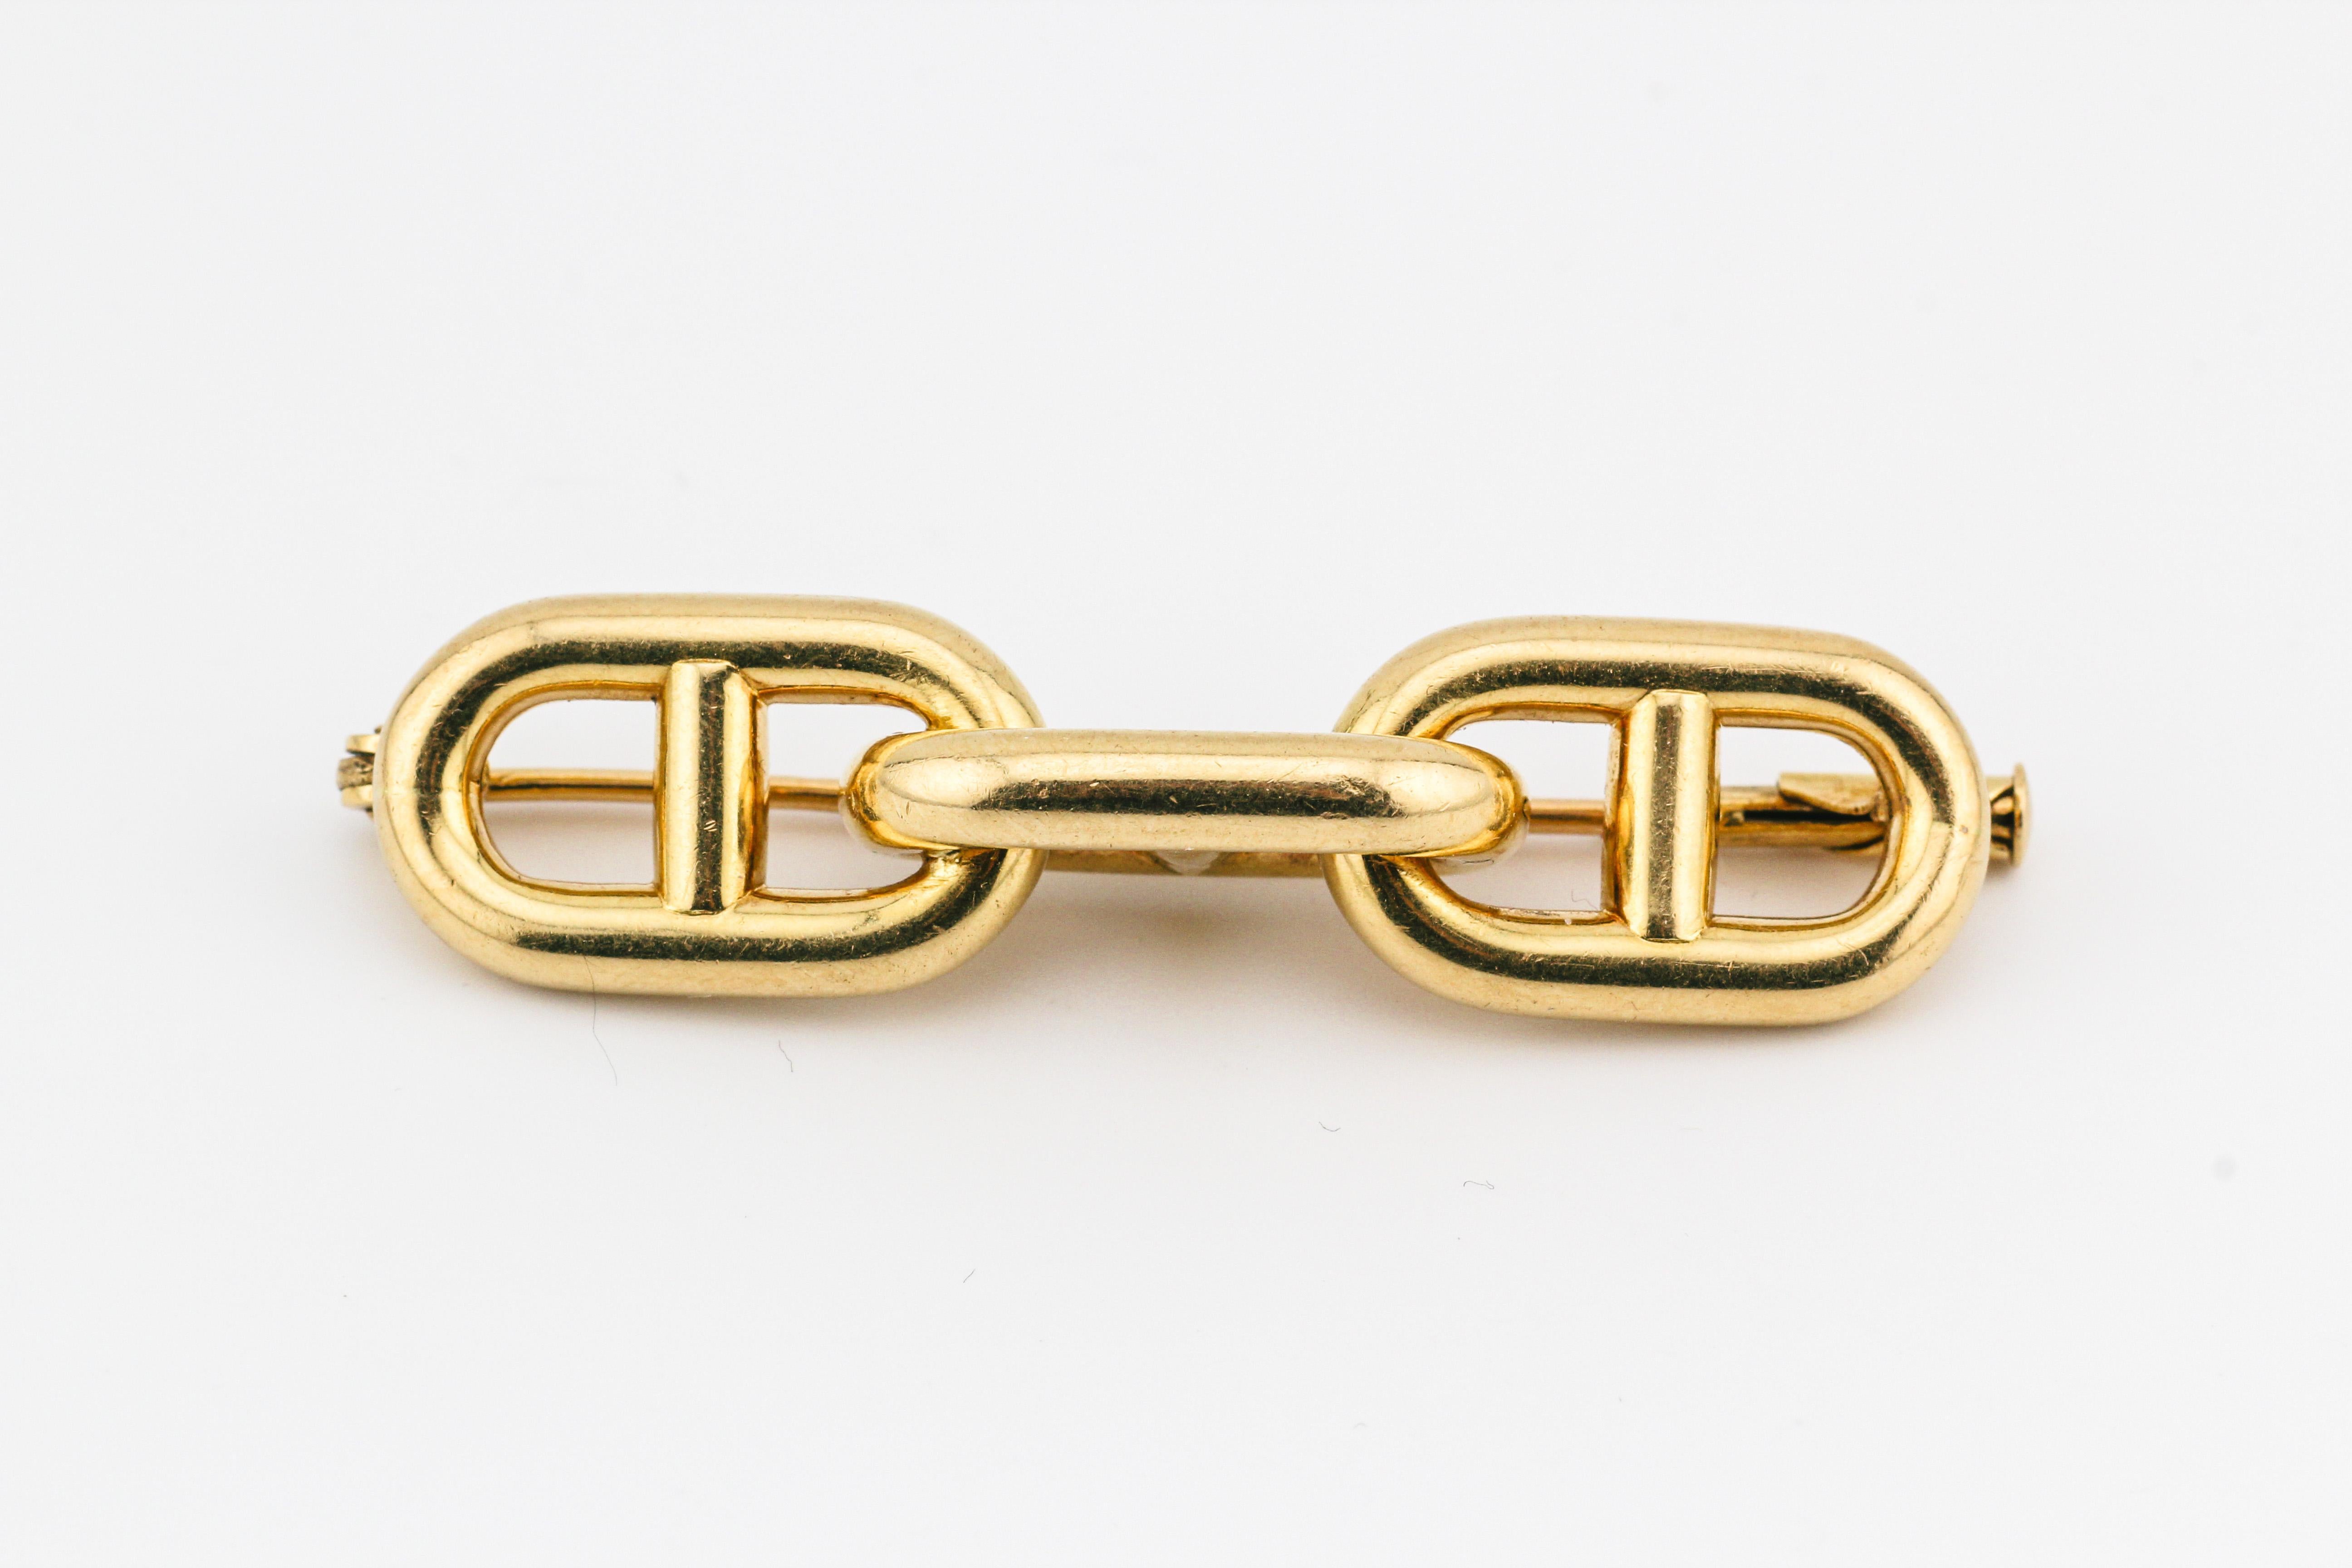 Erhöhen Sie Ihren Stil mit der zeitlosen Anziehungskraft der Hermes Vintage 1970s Chaine D'Ancre 18k Gold Brosche. Dieses exquisite Stück aus dem renommierten französischen Luxushaus Hermes ist ein Zeugnis für Handwerkskunst und beständiges Design. 